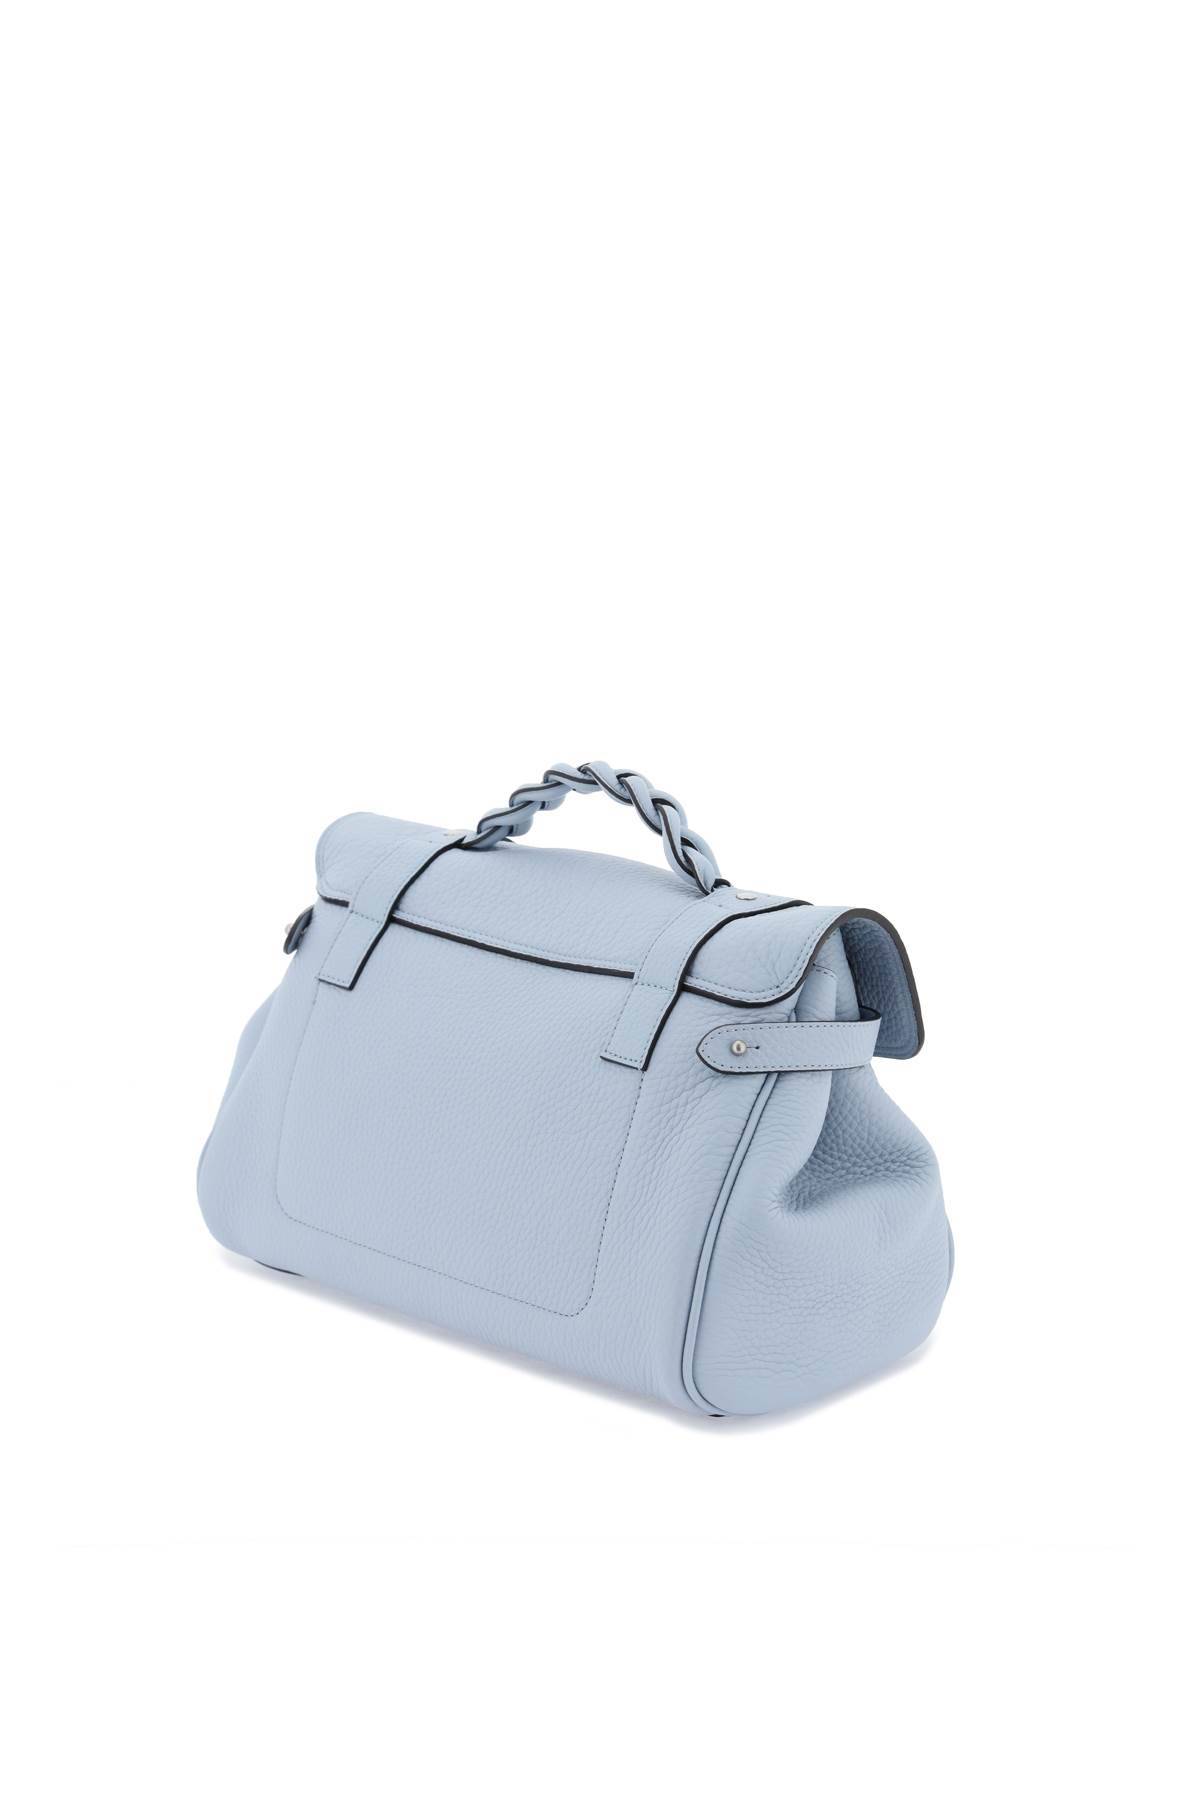 Shop Mulberry Alexa Medium Handbag In Light Blue